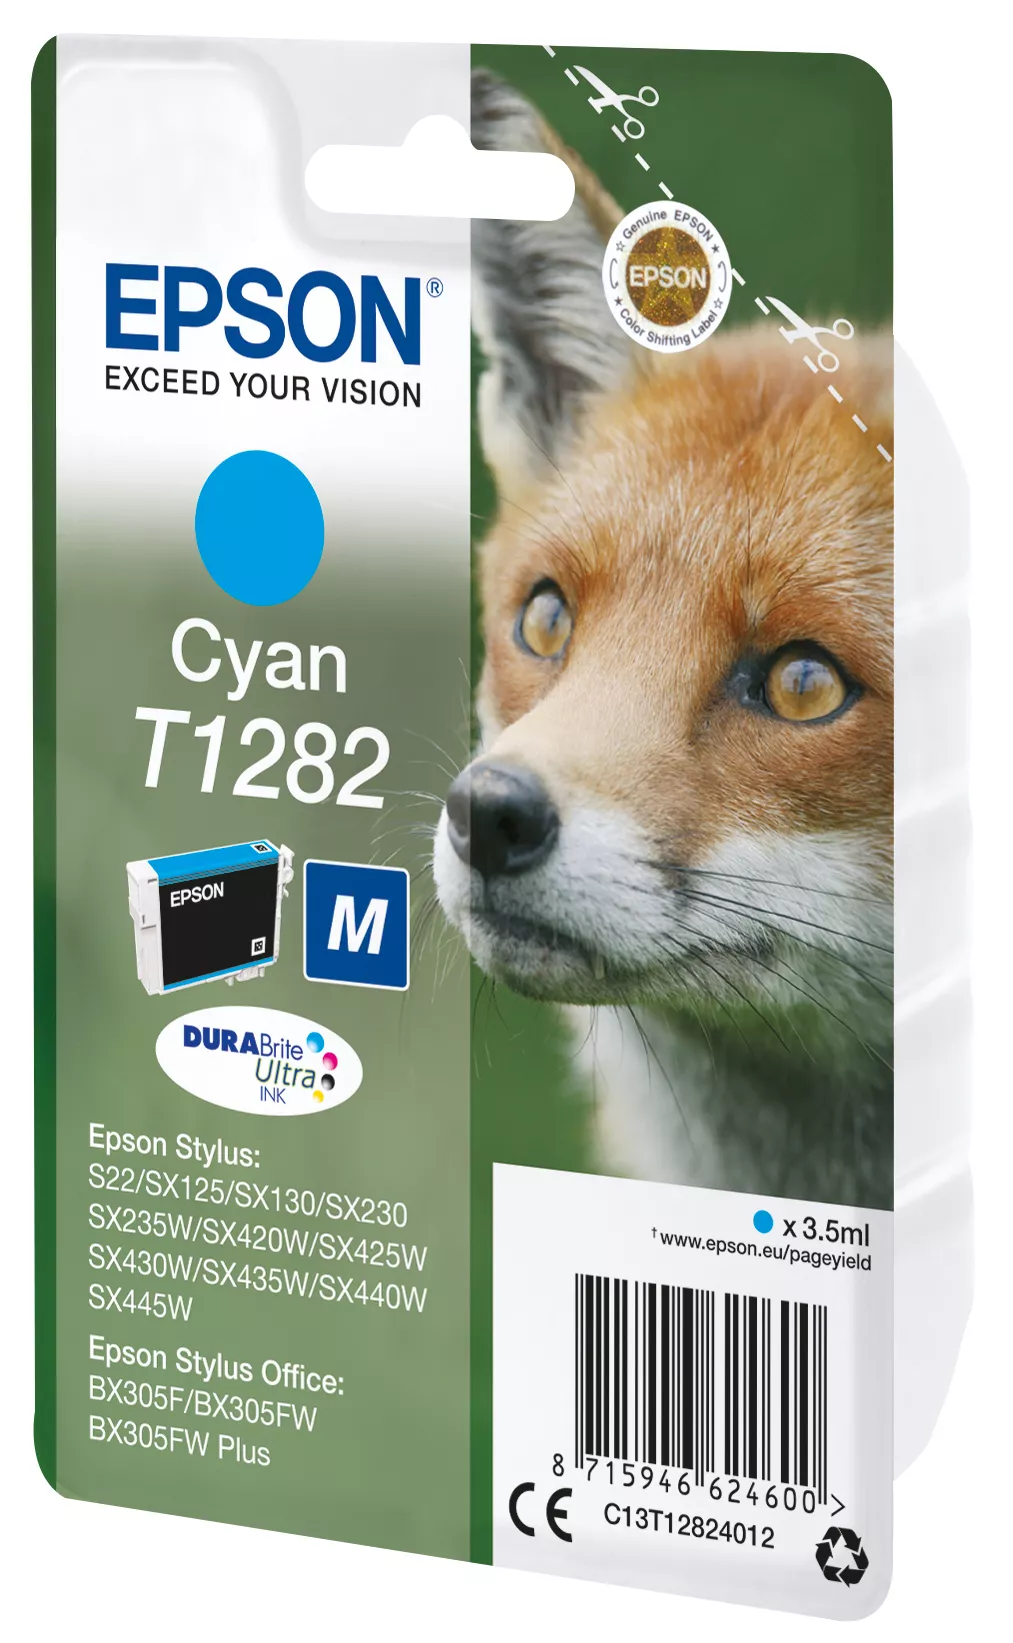 Vente EPSON T1282 cartouche d encre cyan capacité standard Epson au meilleur prix - visuel 2